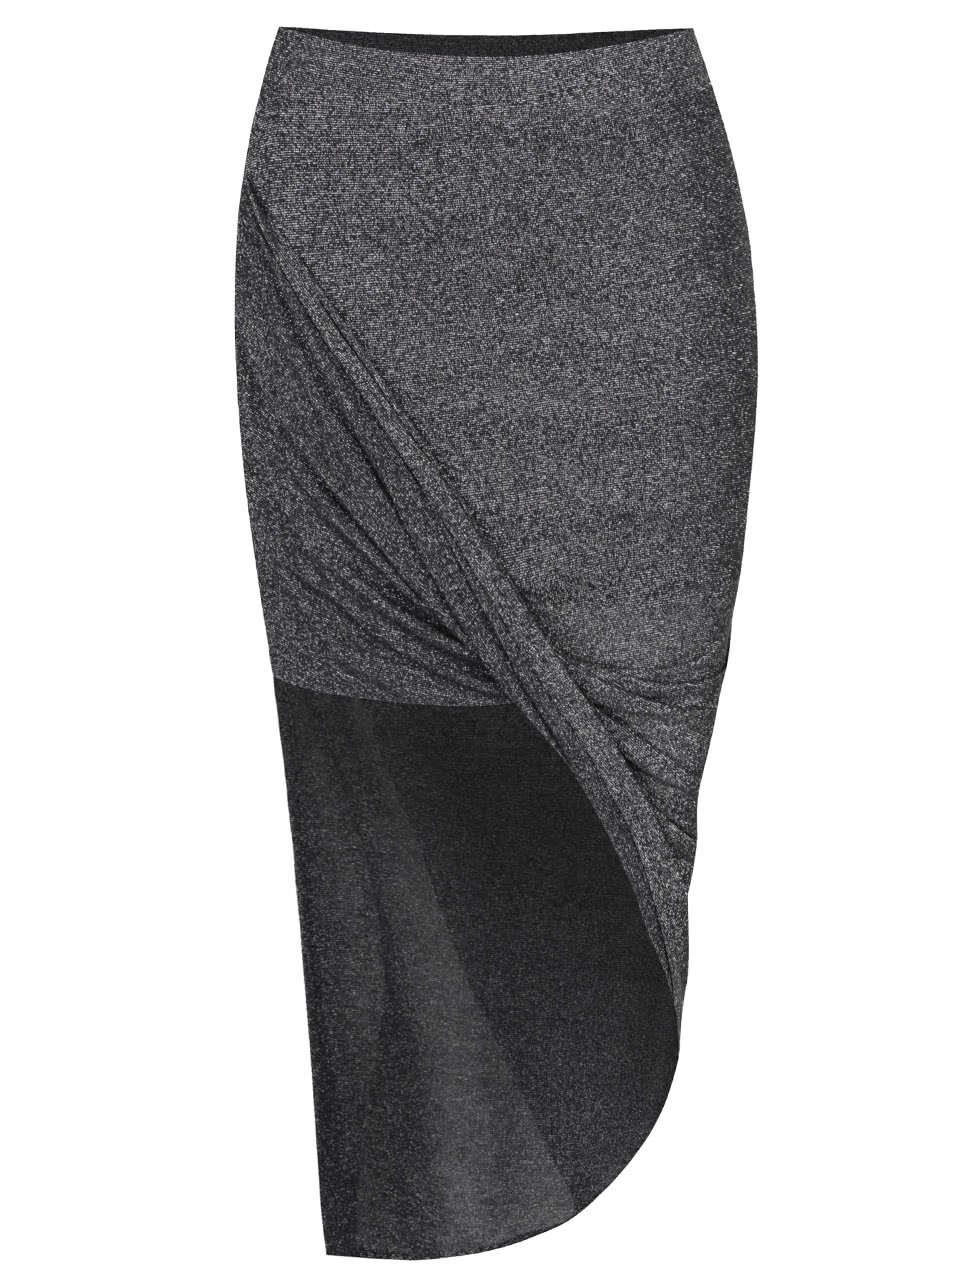 Černá třpytivá sukně s překládaným efektem Noisy May Infinity